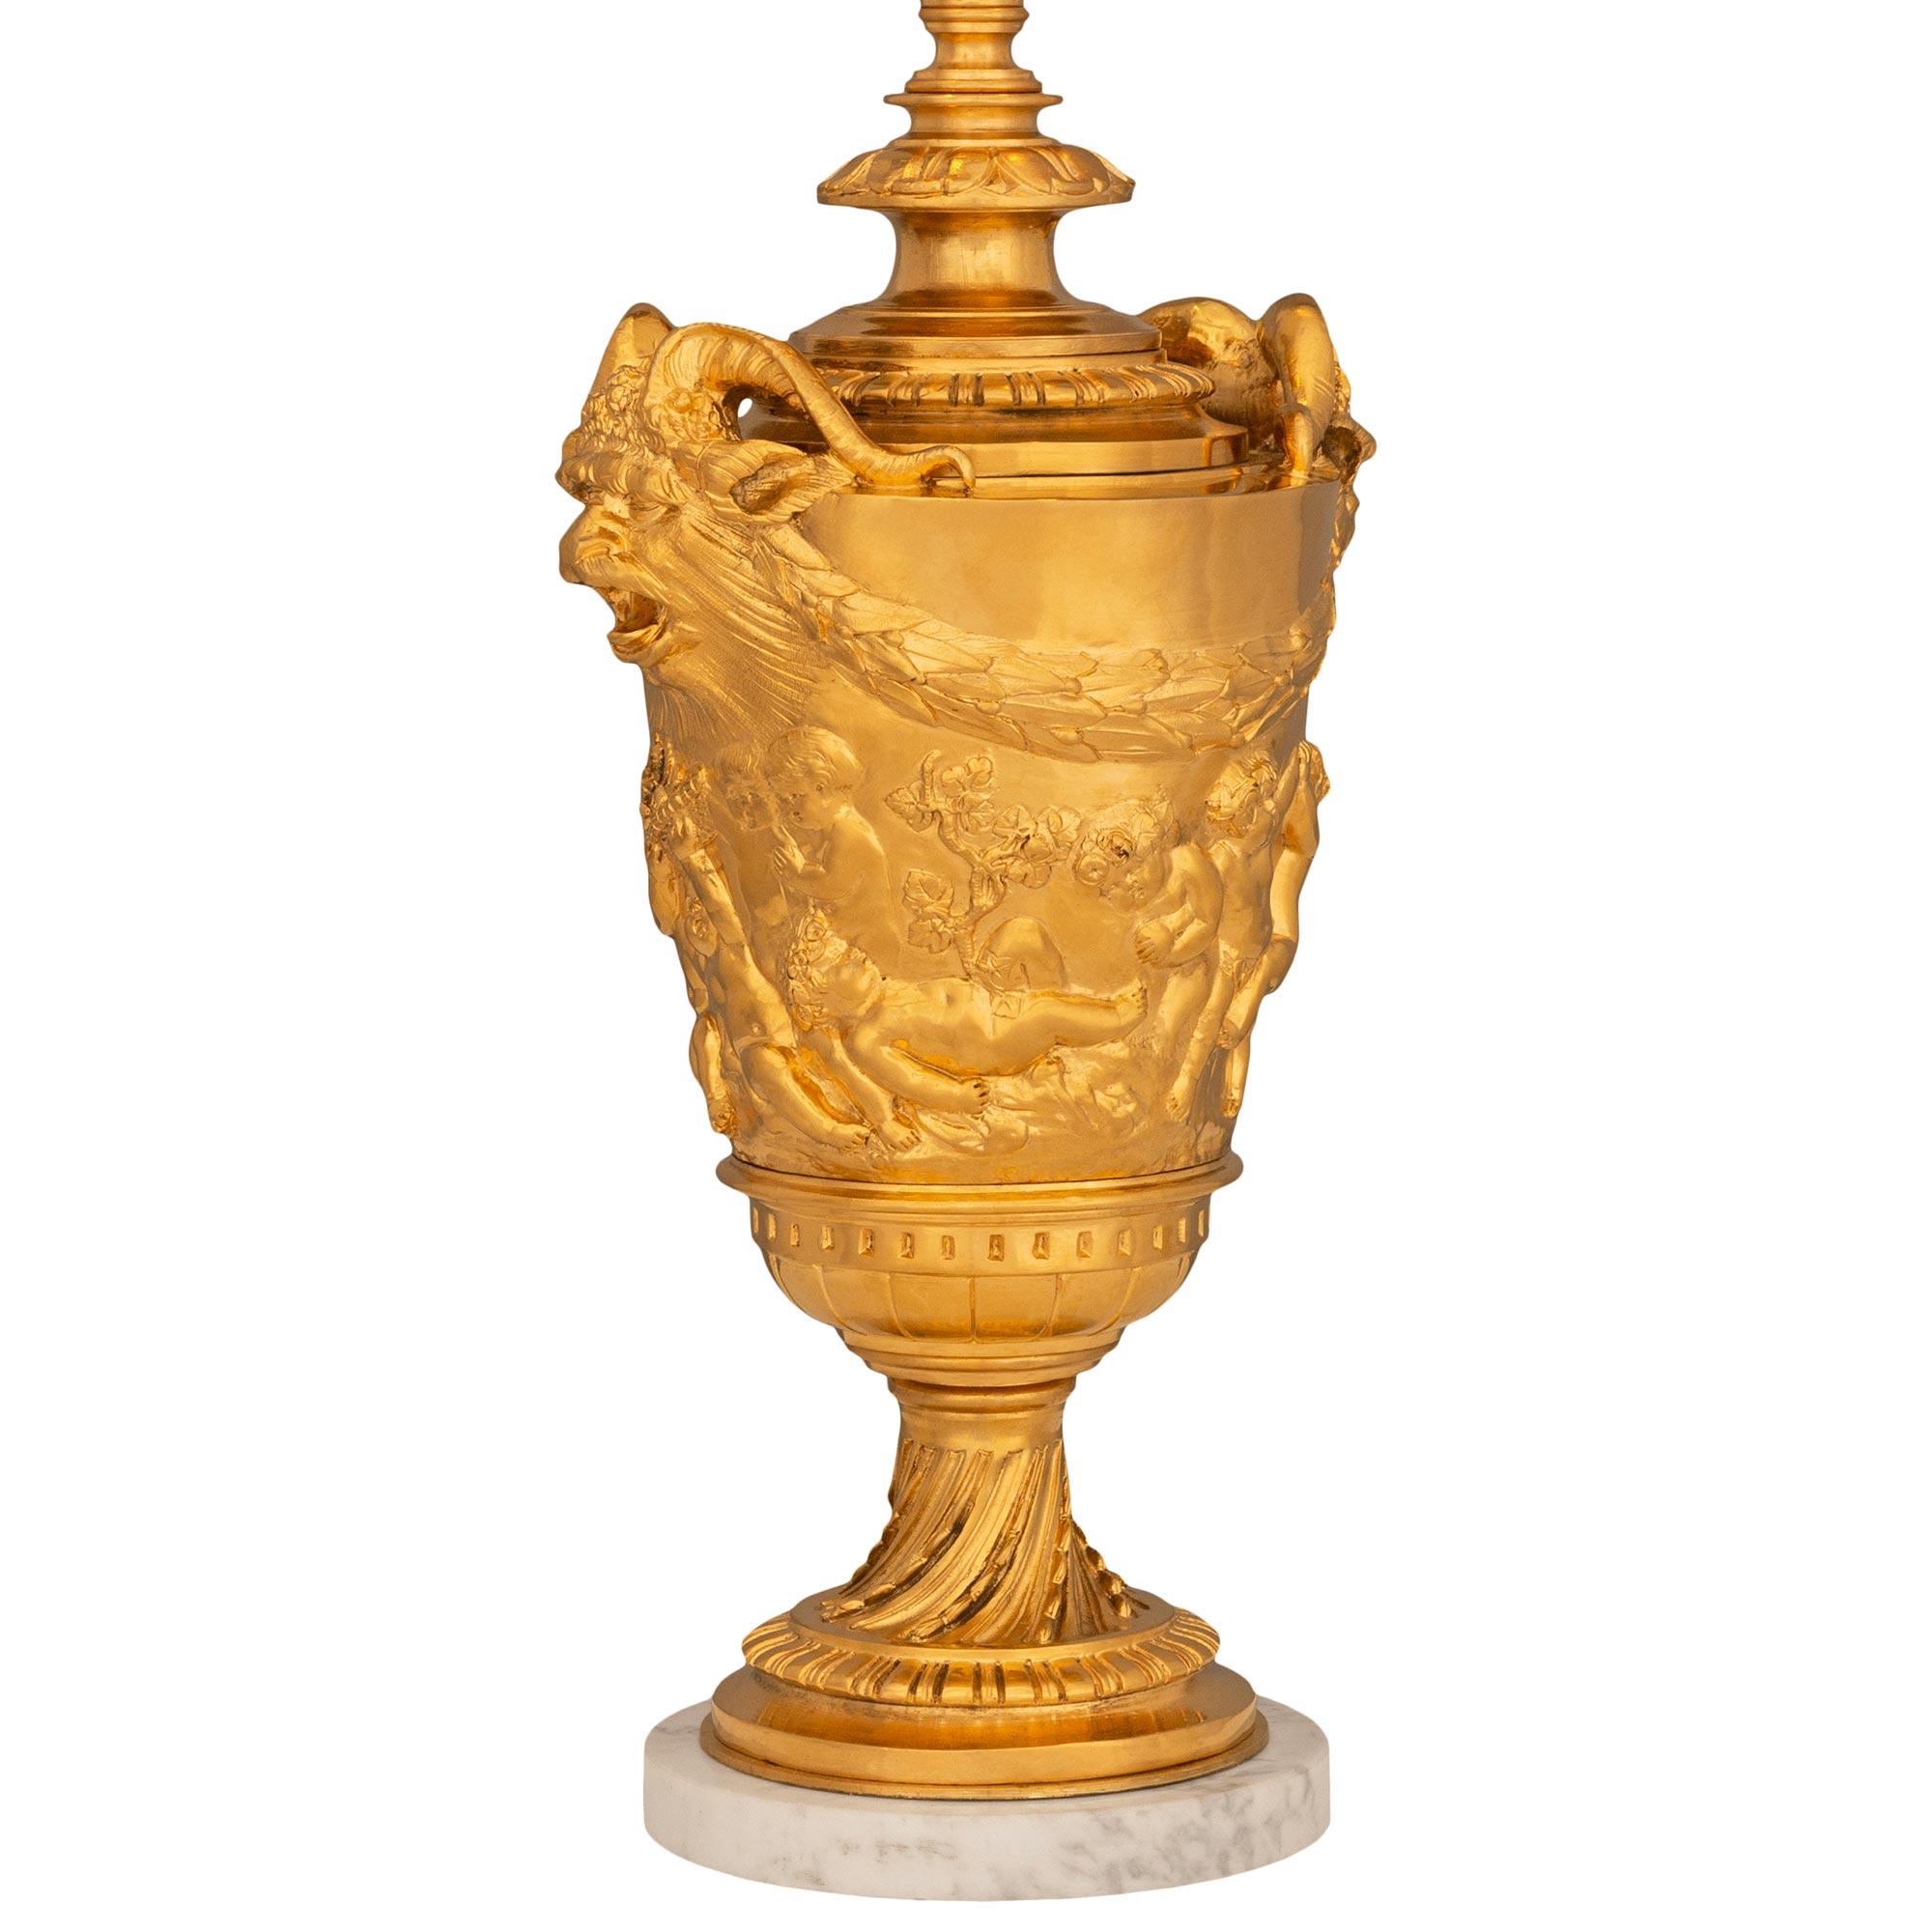 Eine atemberaubende und qualitativ hochwertige französische Lampe aus dem 19. Jahrhundert aus Ormolu und Calacatta-Marmor. Diese schöne Lampe steht auf einem runden Sockel aus Calacatta-Marmor unter einem gesprenkelten und geriffelten Ormolu-Band